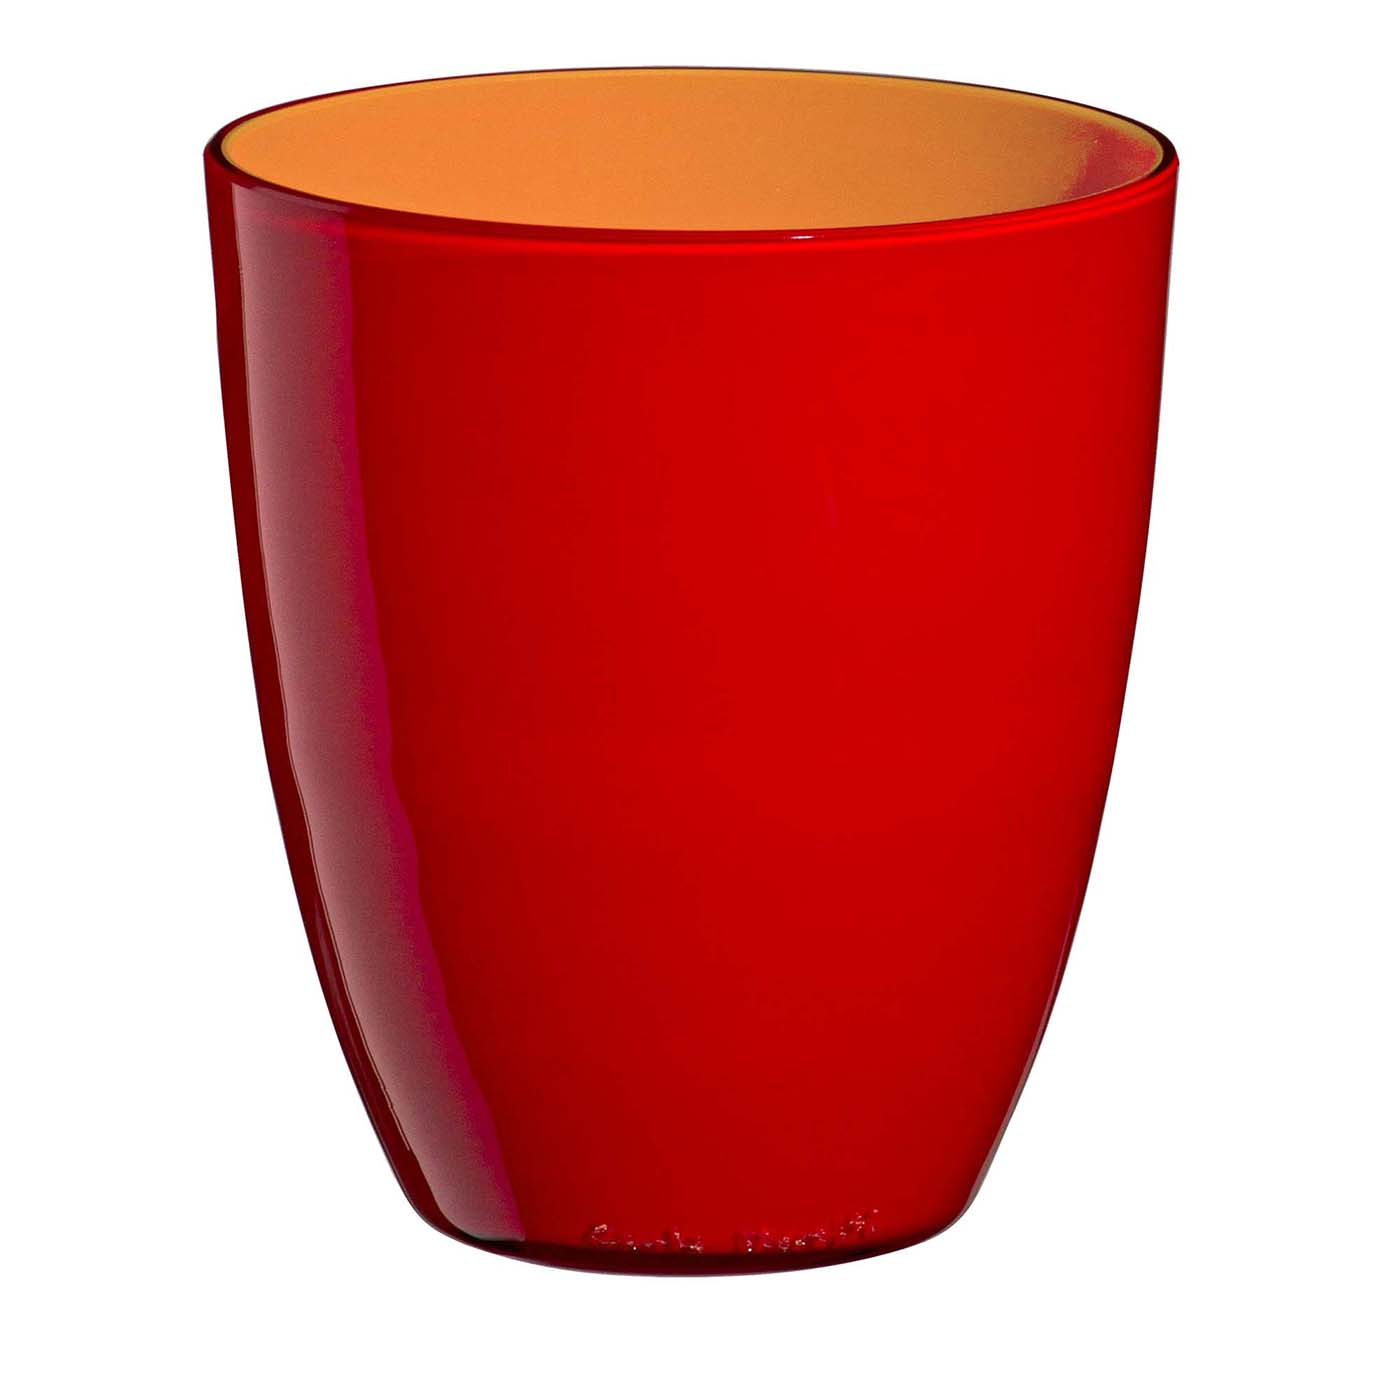 Pirus Rotes und oranges Glas von Carlo Moretti - Hauptansicht